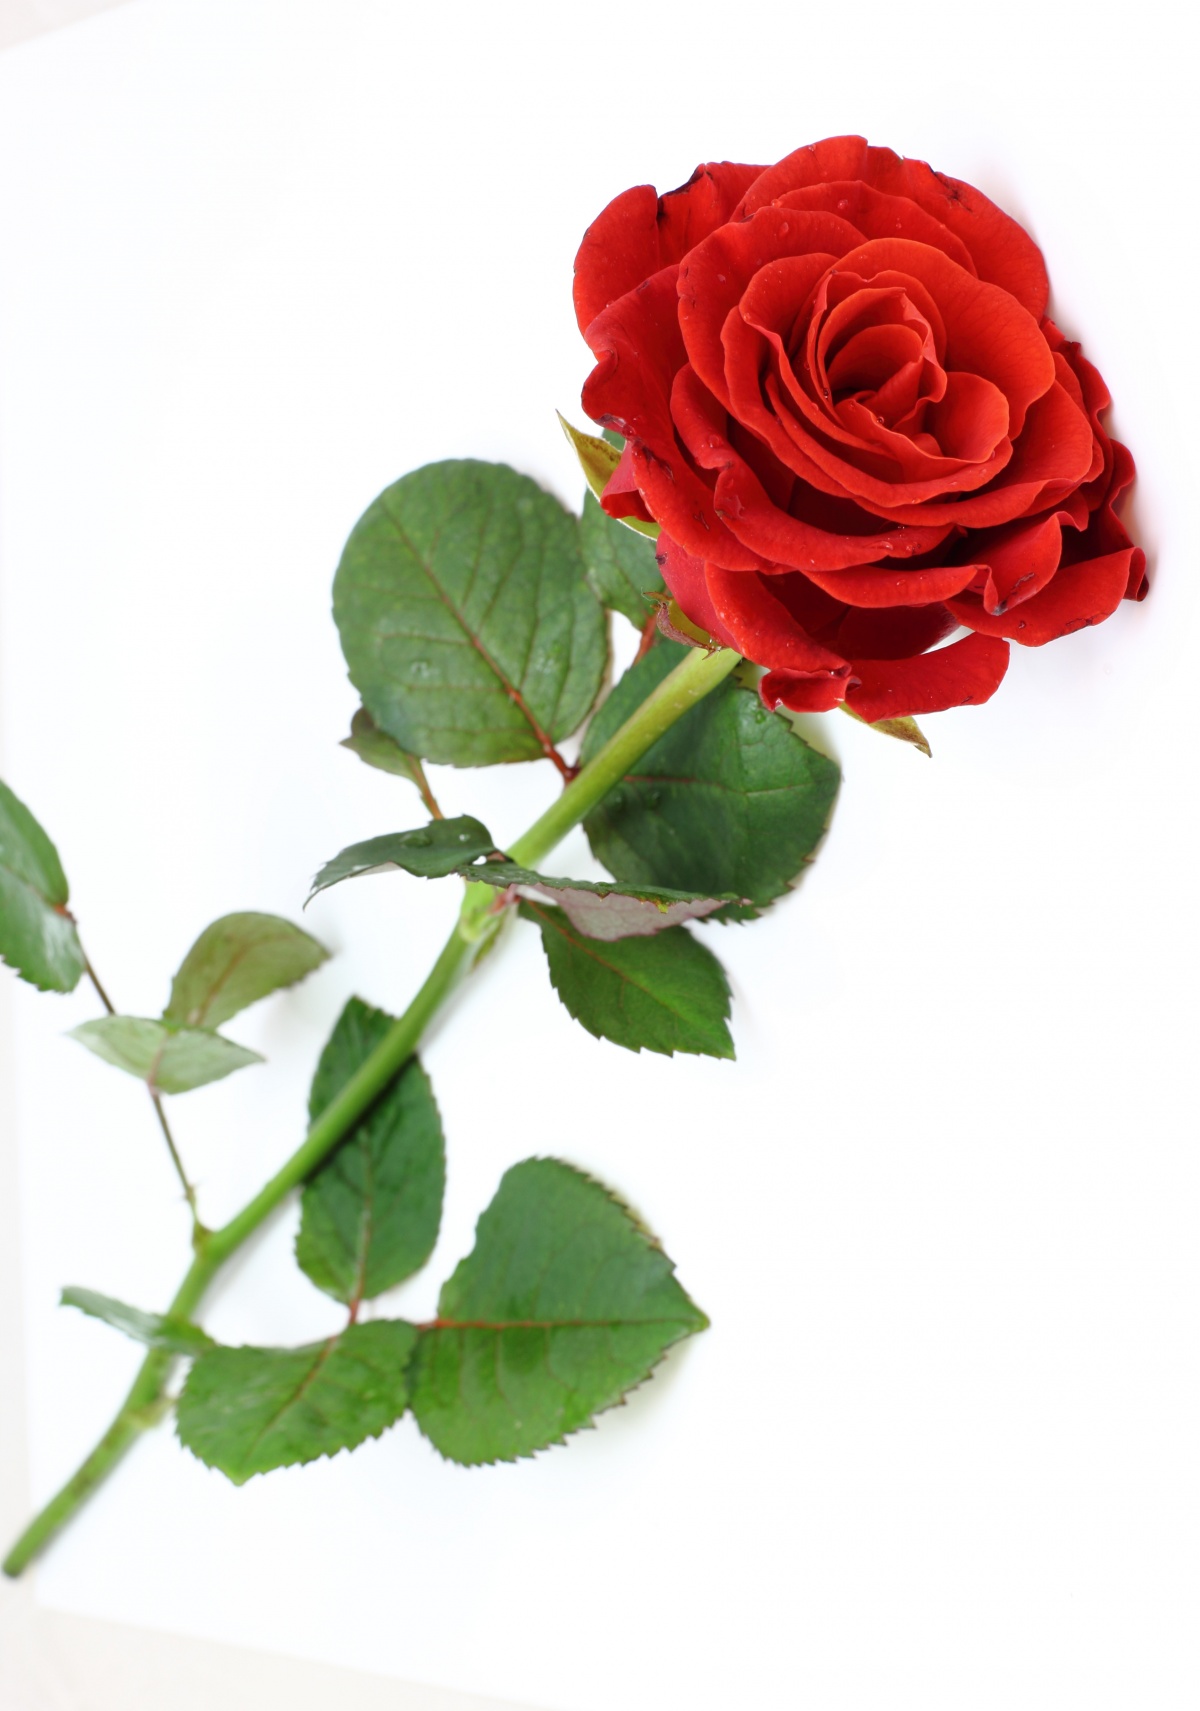 red rose - arbeen Fan Art (38512668) - Fanpop